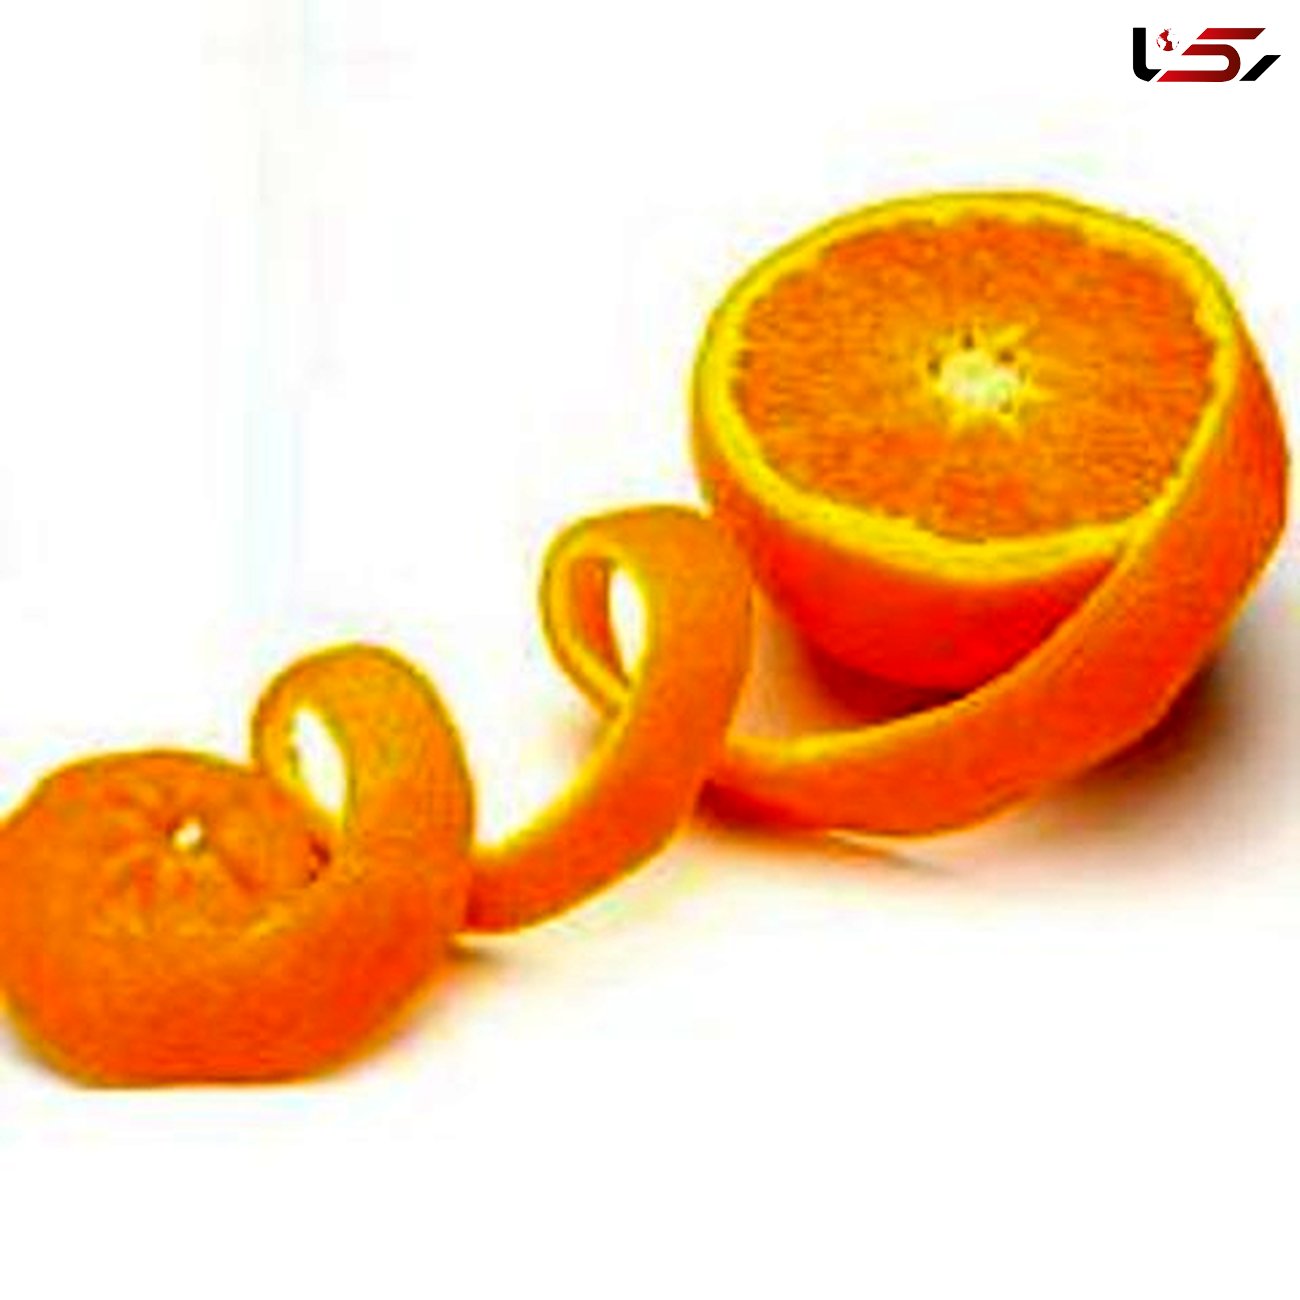 جوانسازی پوست آقایان با پرتقال! / در حمام آب پرتقال بخورید!